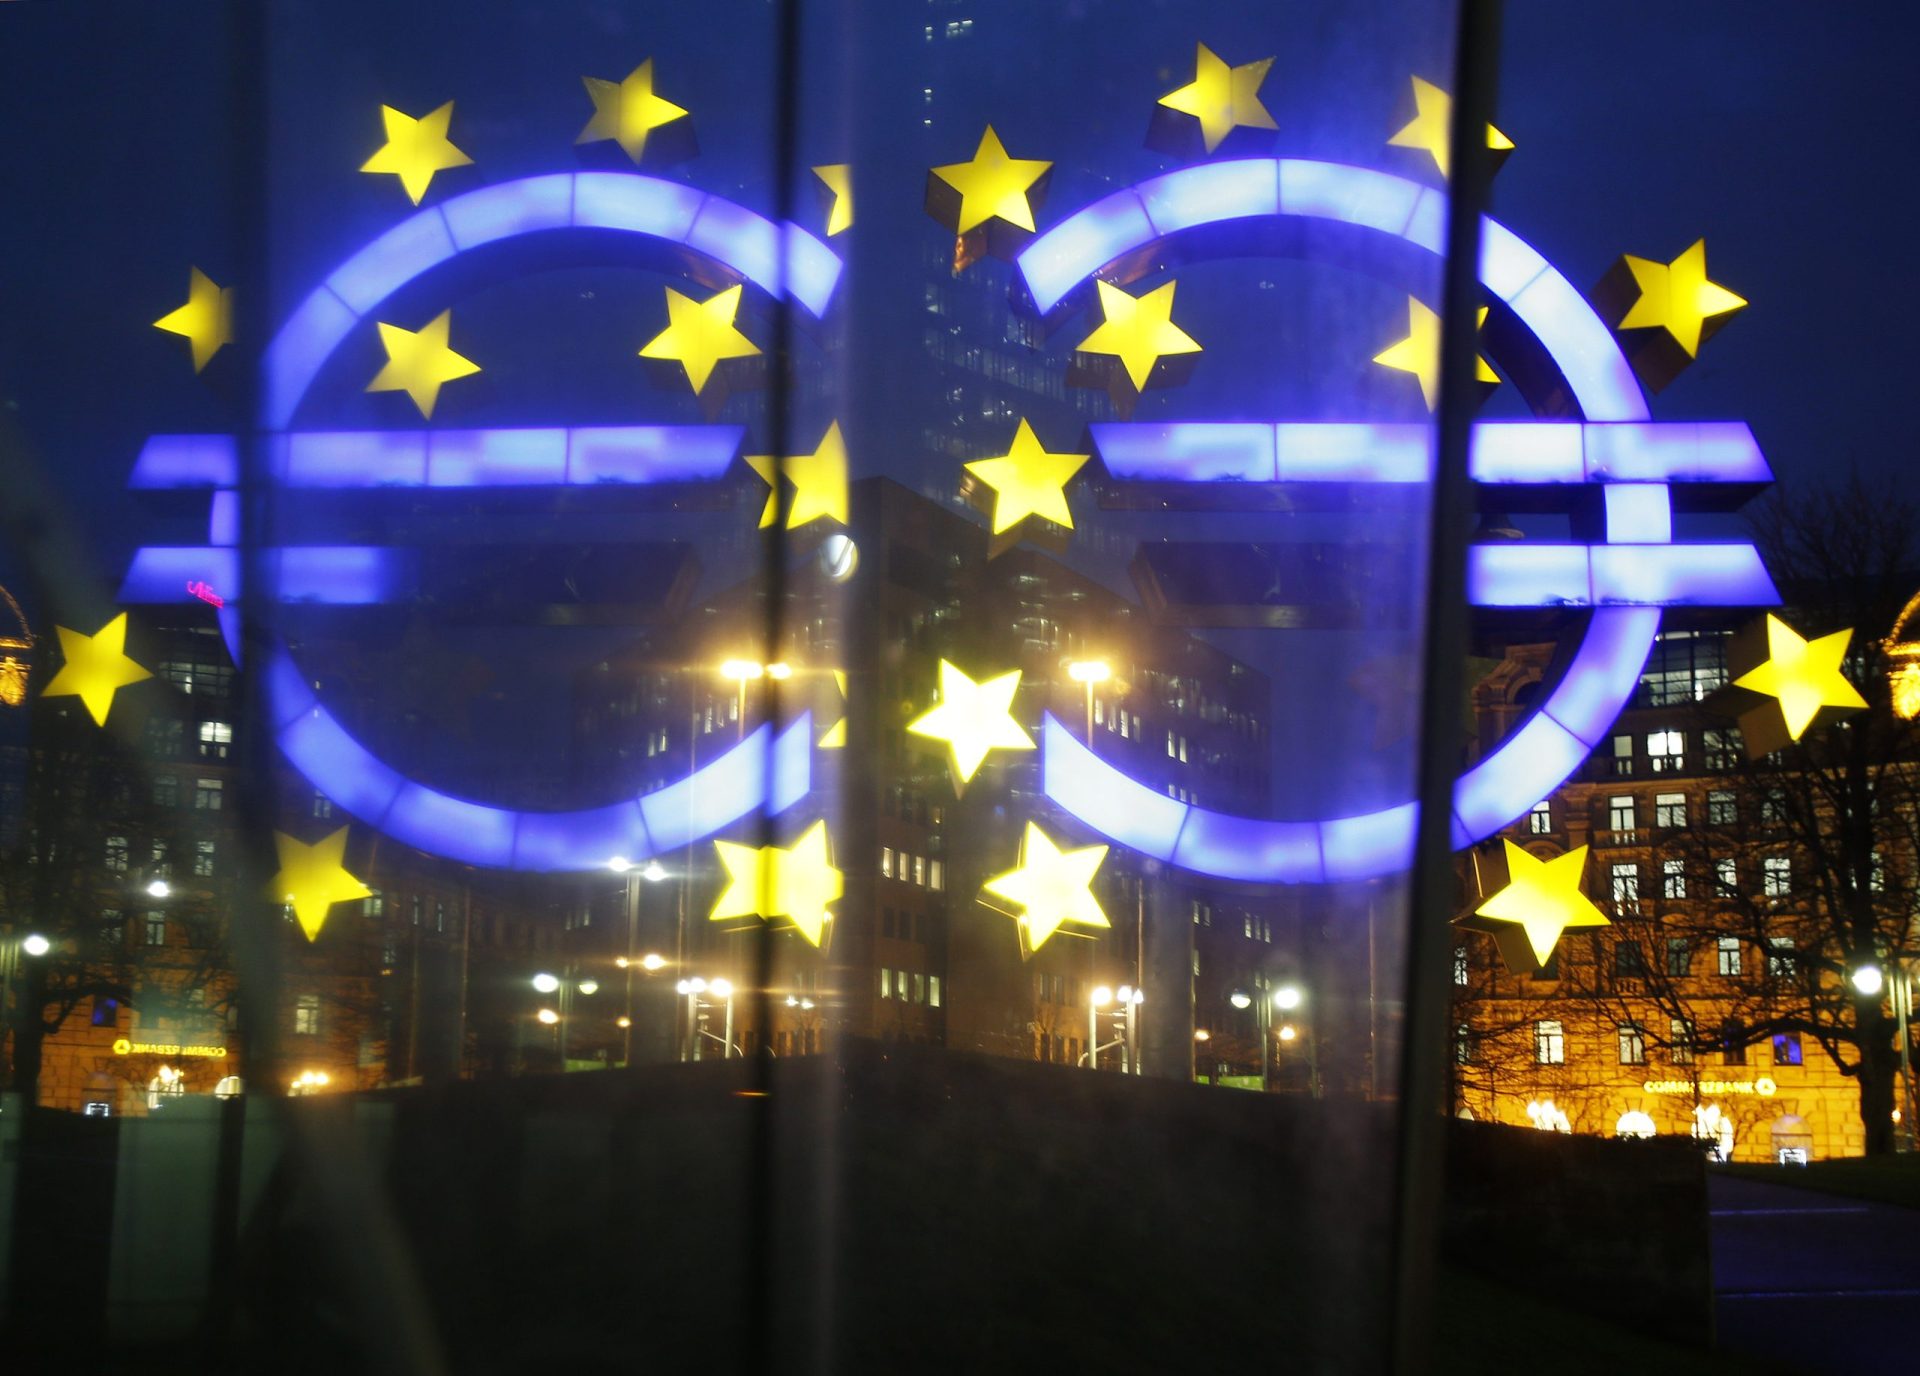 Grécia deverá pagar 3,4 mil milhões de euros ao BCE